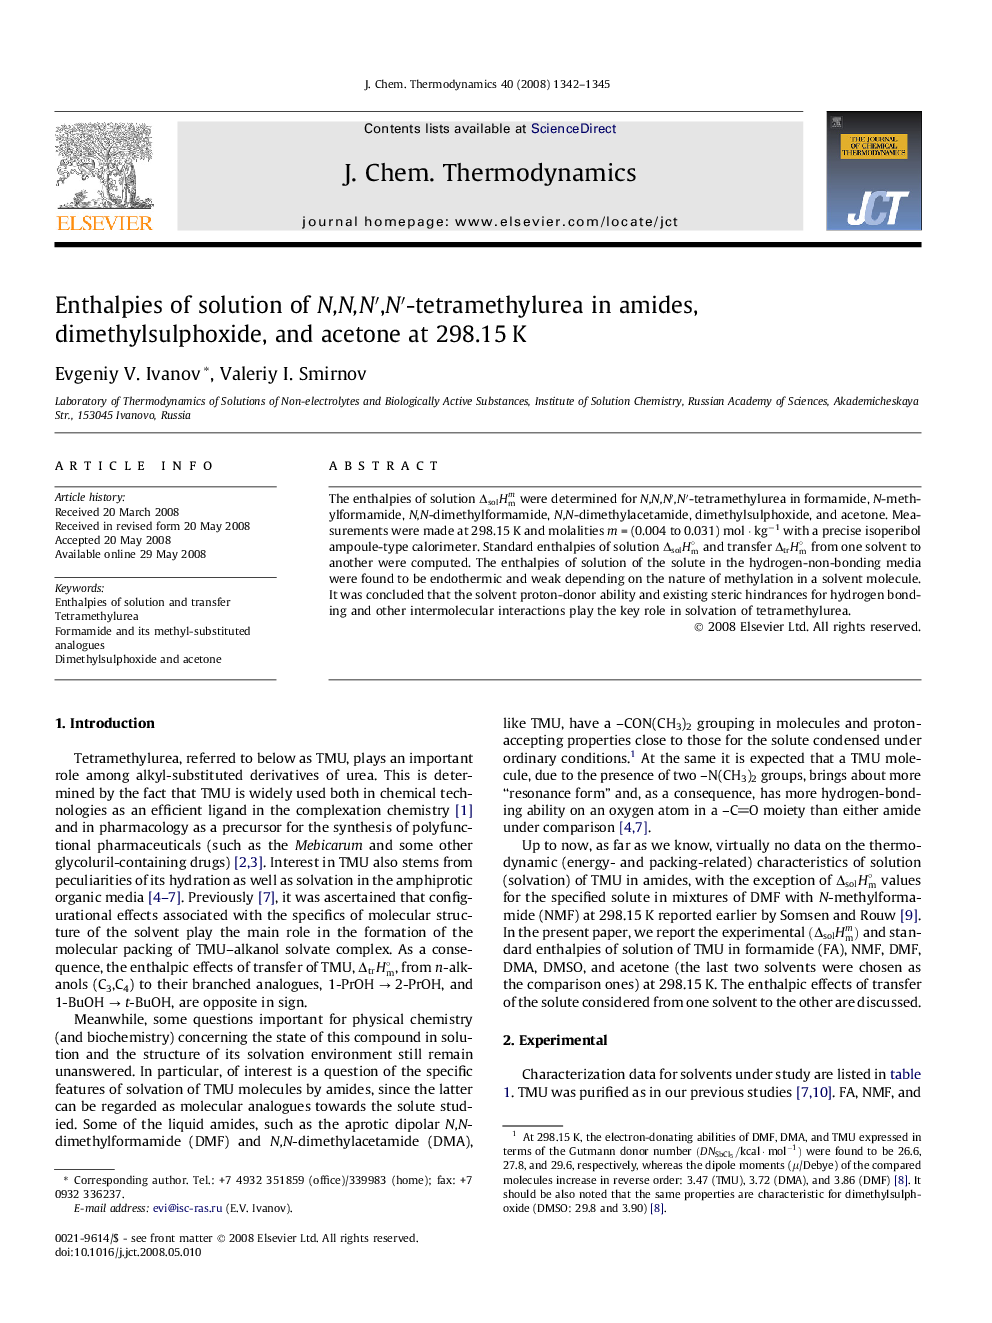 Enthalpies of solution of N,N,N′,N′-tetramethylurea in amides, dimethylsulphoxide, and acetone at 298.15 K